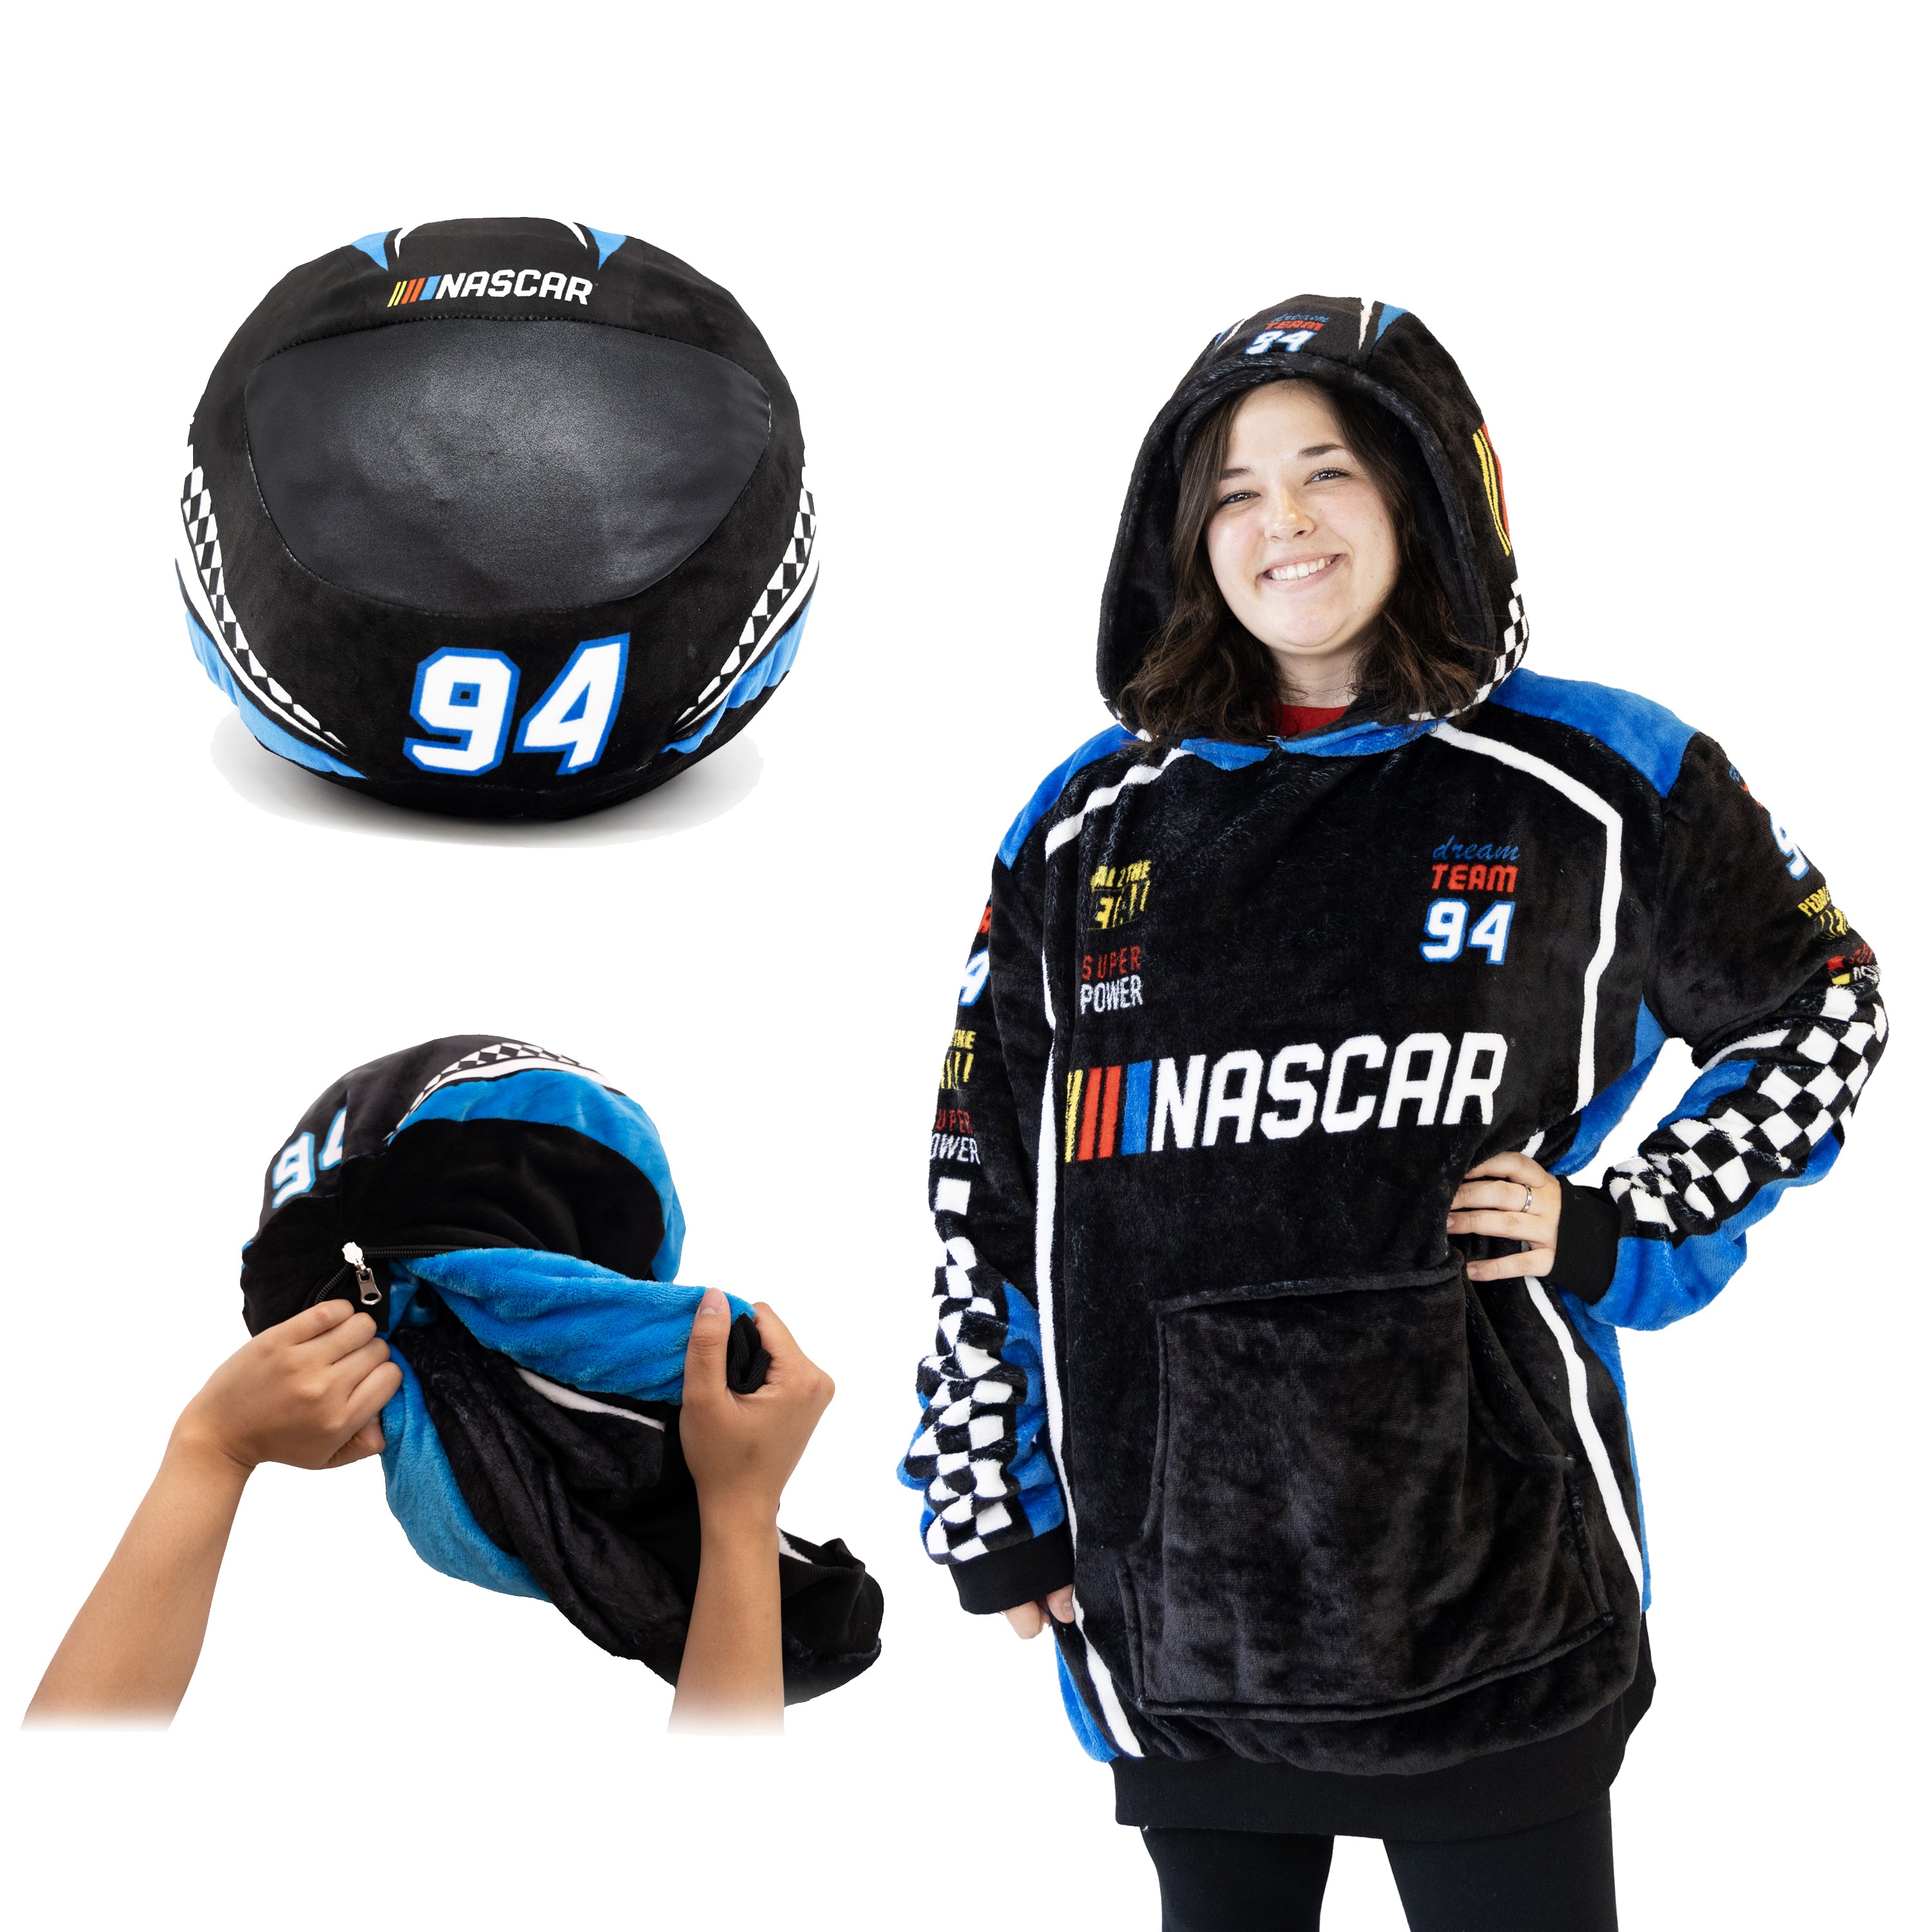 NASCAR | Black Racing Suit Snugible 2-in-1 Blanket Hoodie & Pillow